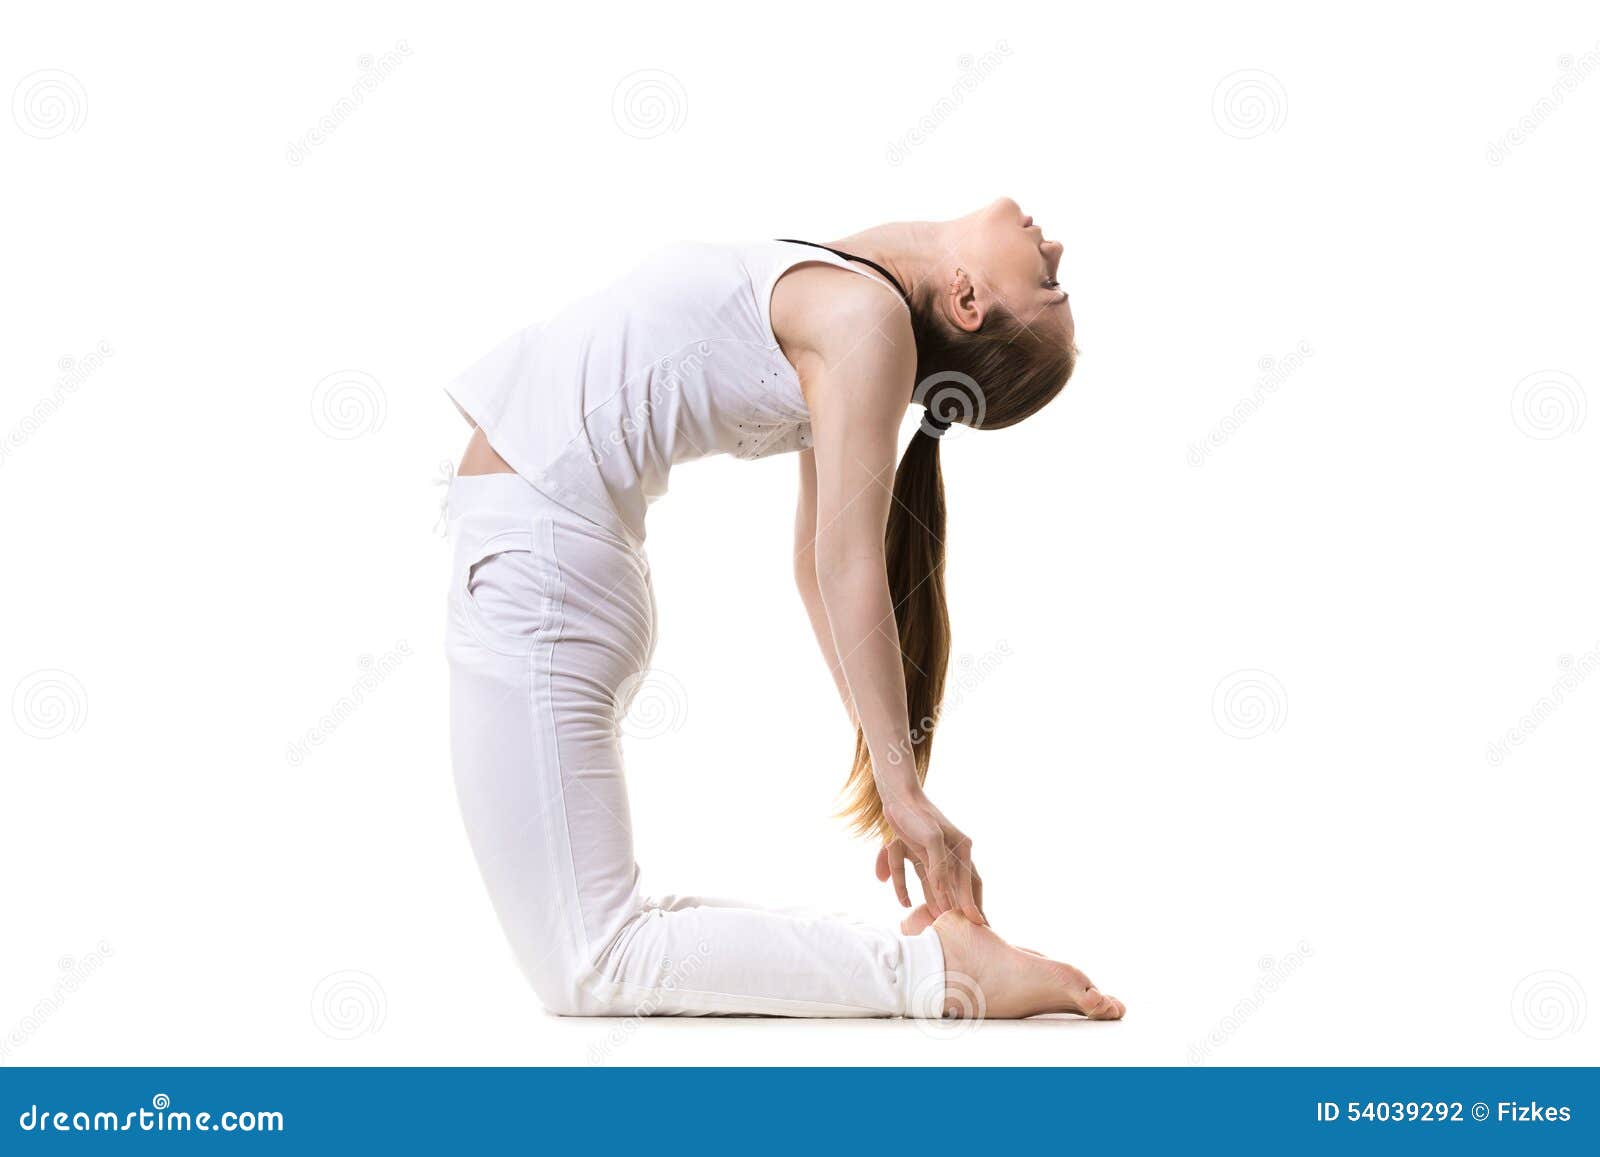 Yoga Asana Ustrasana Stock Photo - Image: 54039292